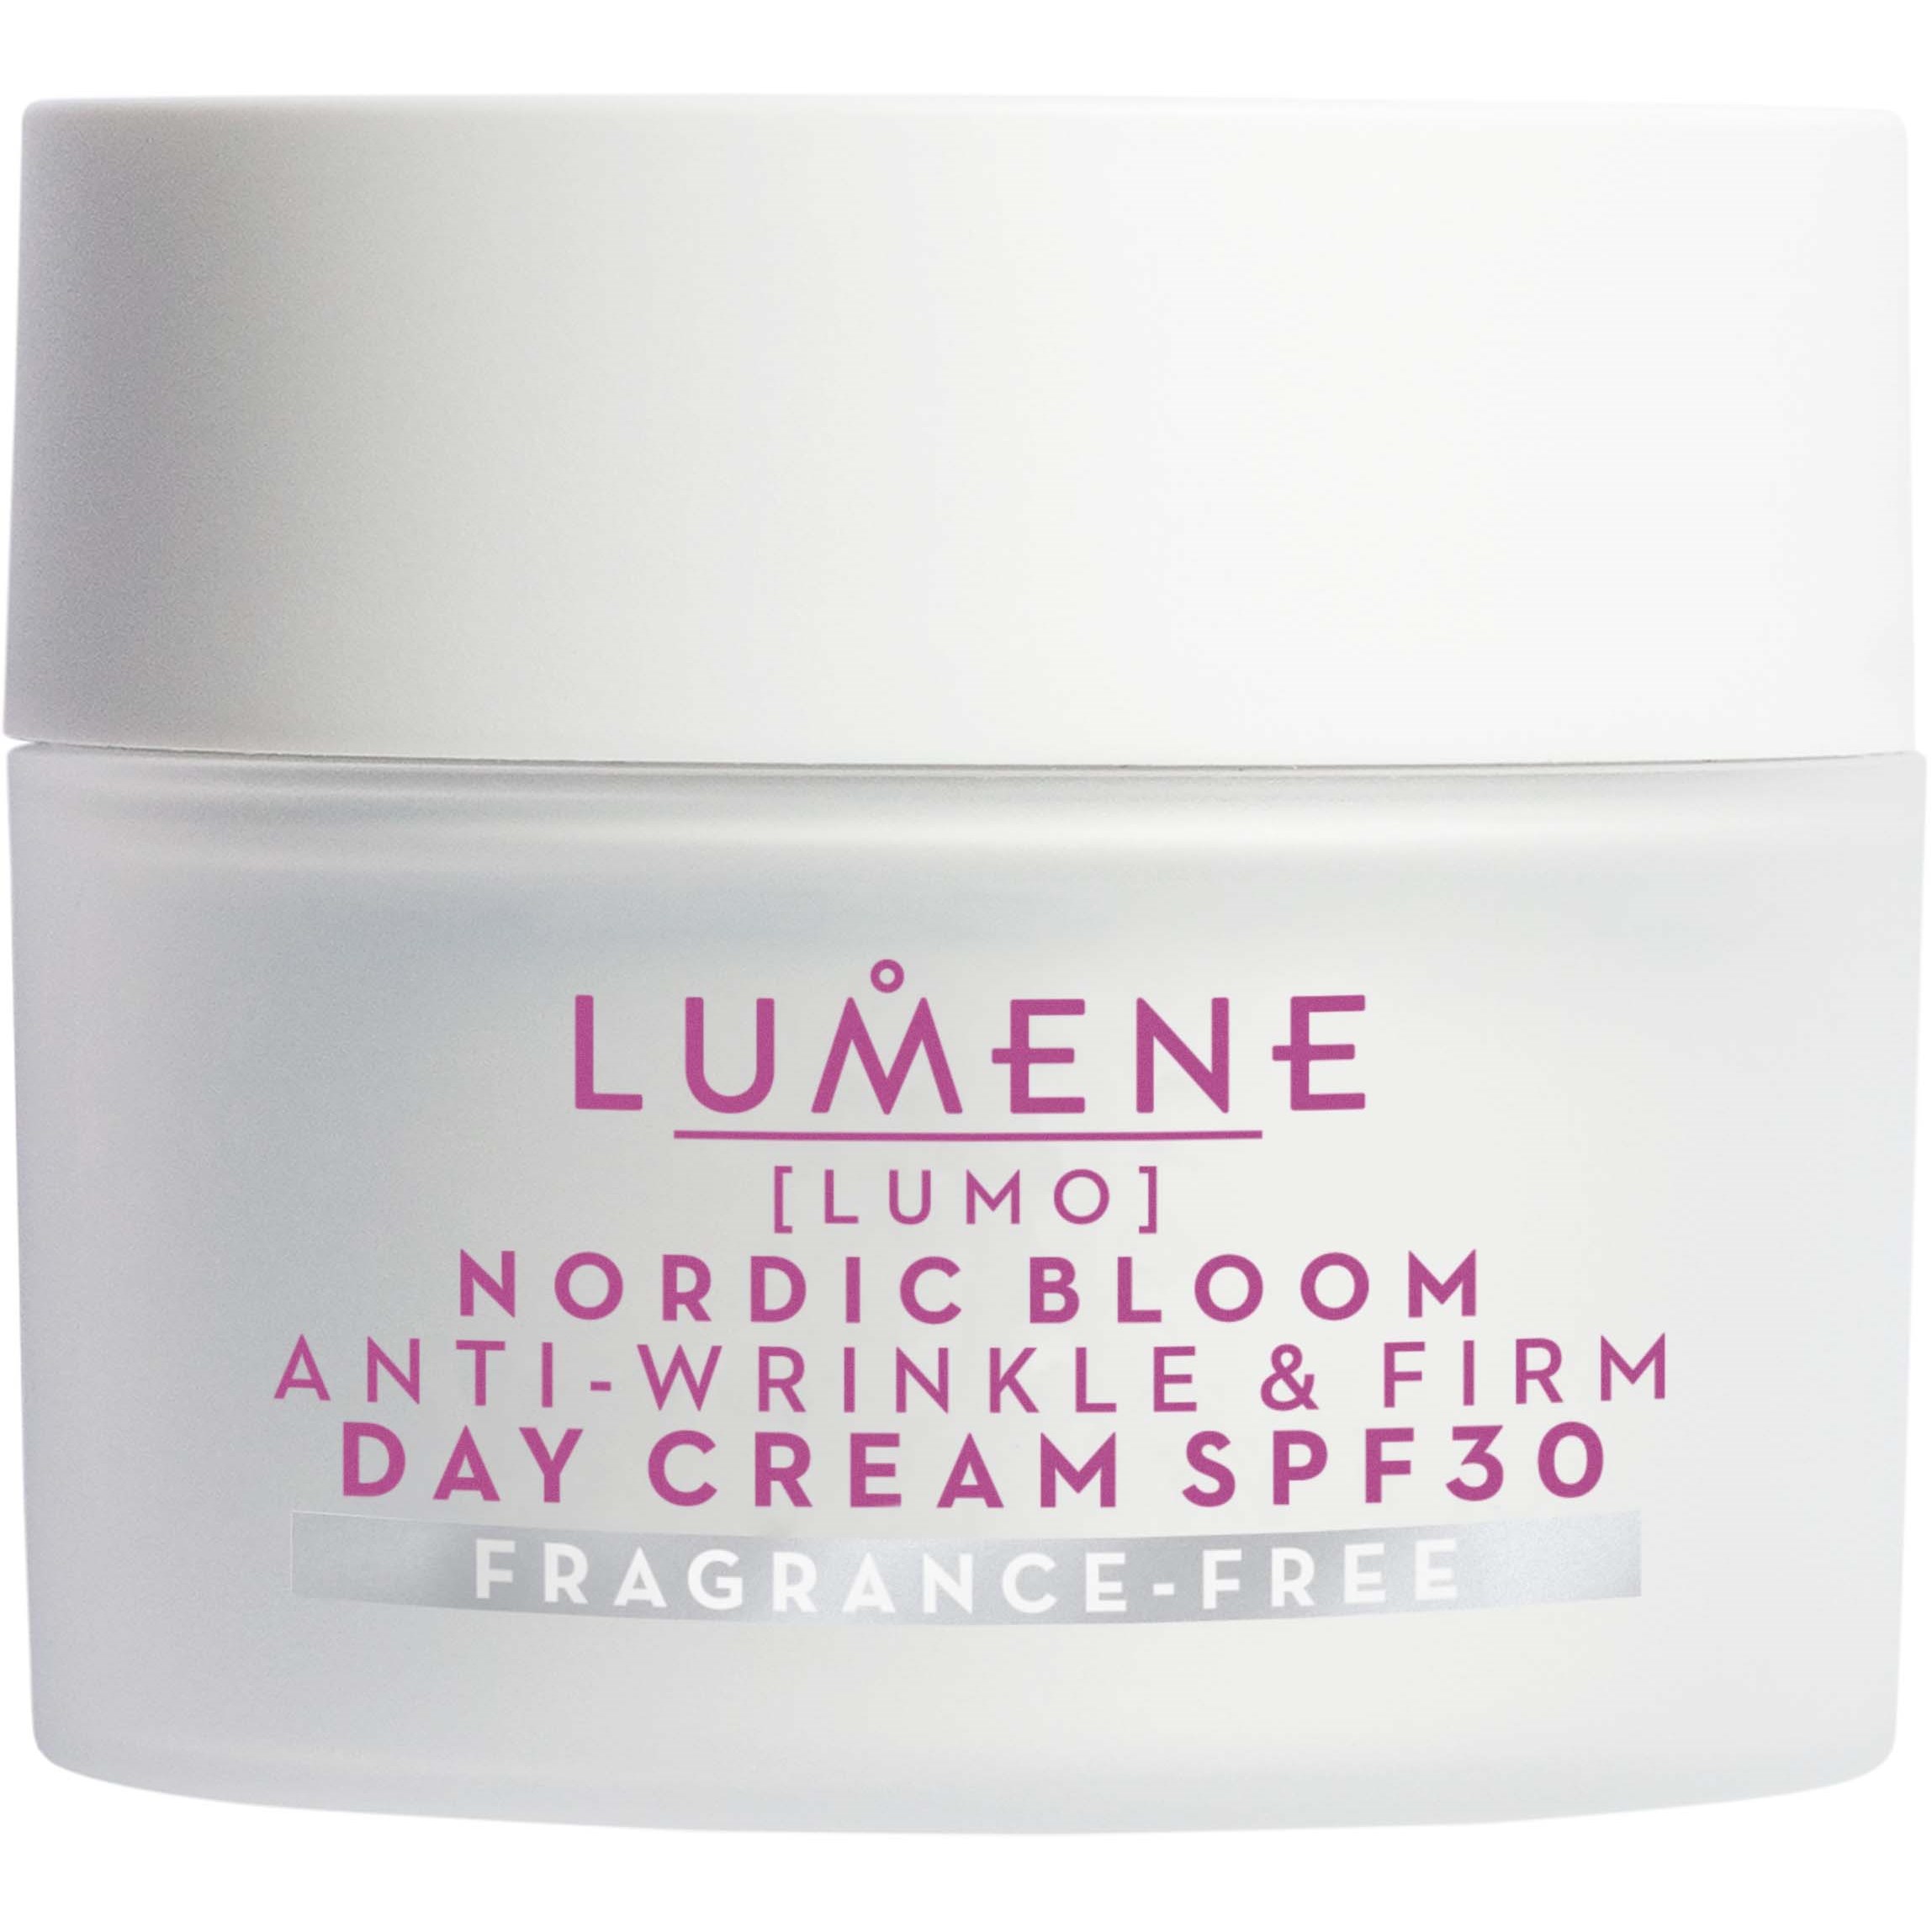 Bilde av Lumene Nordic Bloom Anti-wrinkle & Firm Day Cream Spf30 Fragrance Free